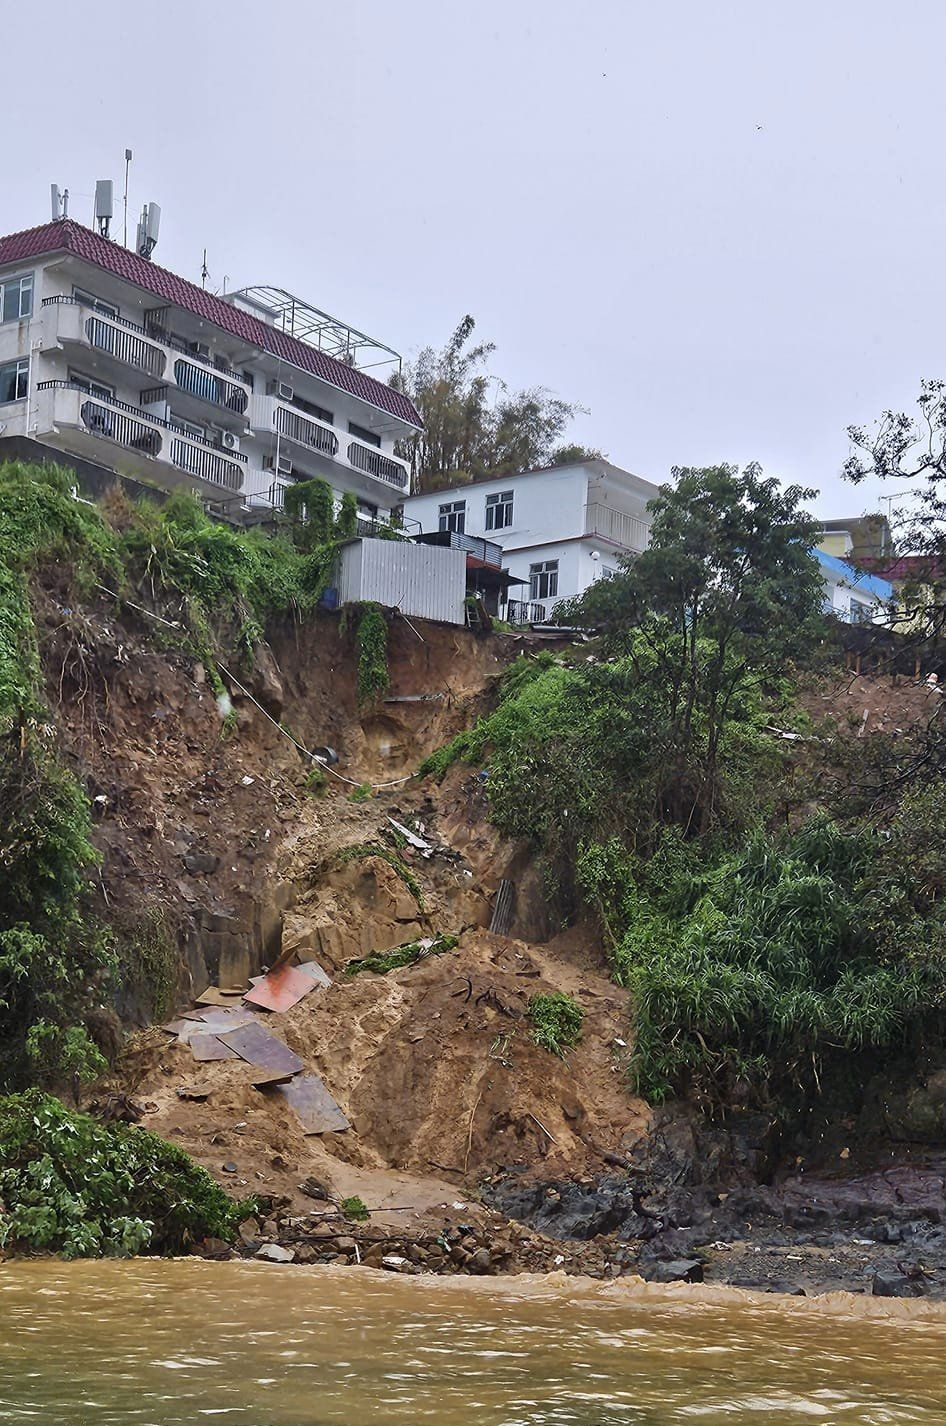 北角新村岸邊，有大幅斜坡山泥傾瀉。離島區議員劉舜婷FB